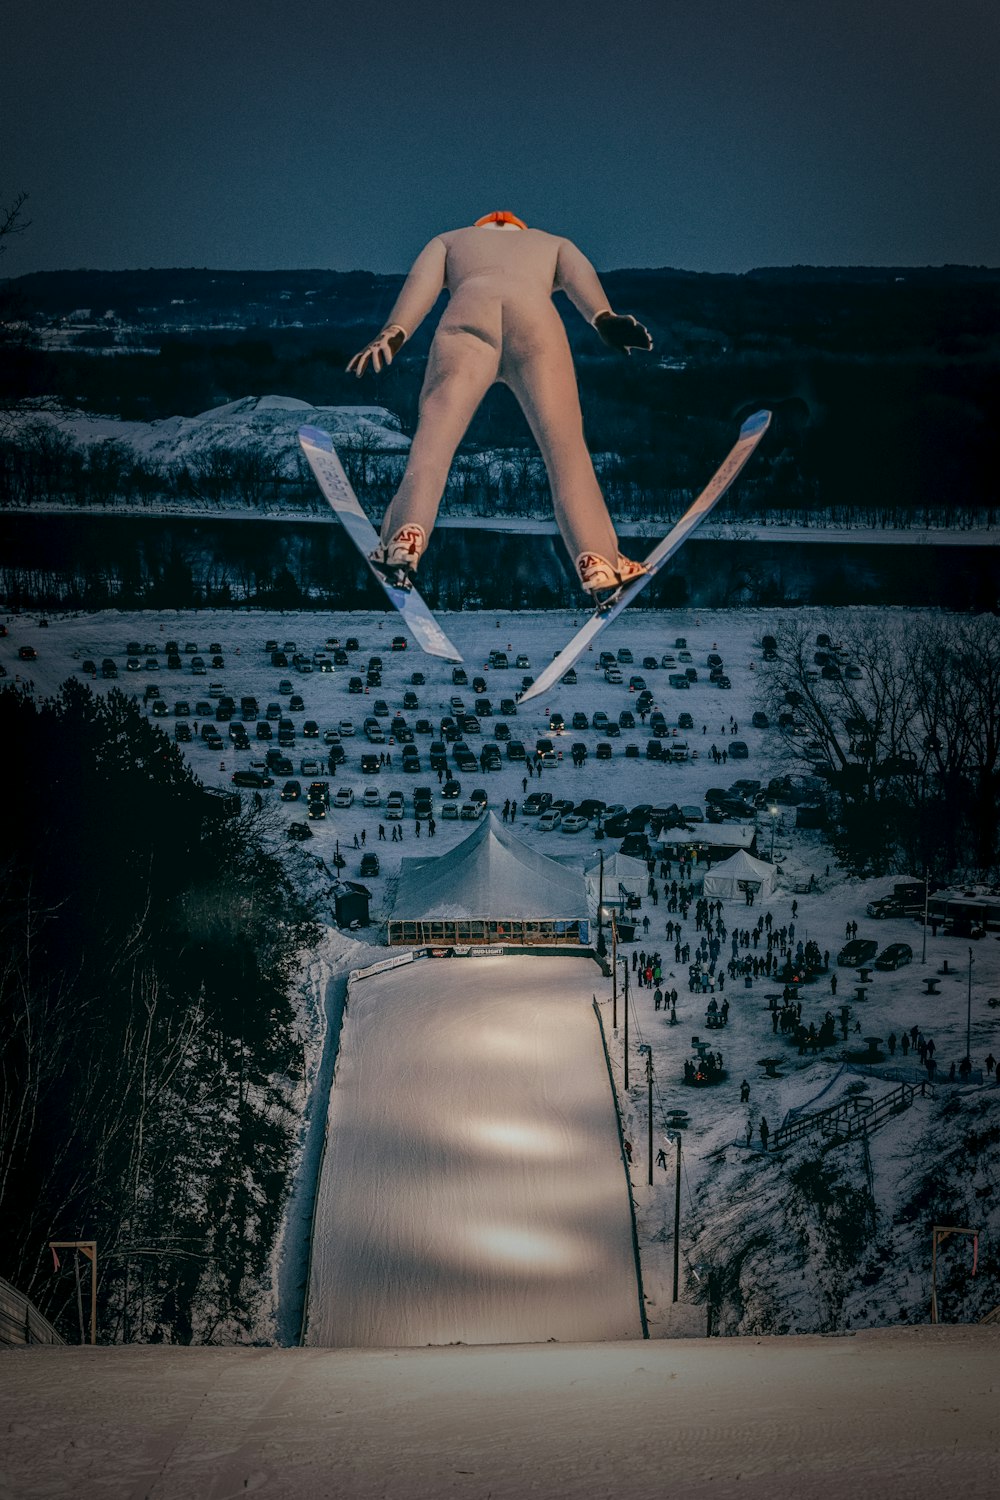 Un uomo che vola nell'aria mentre cavalca gli sci